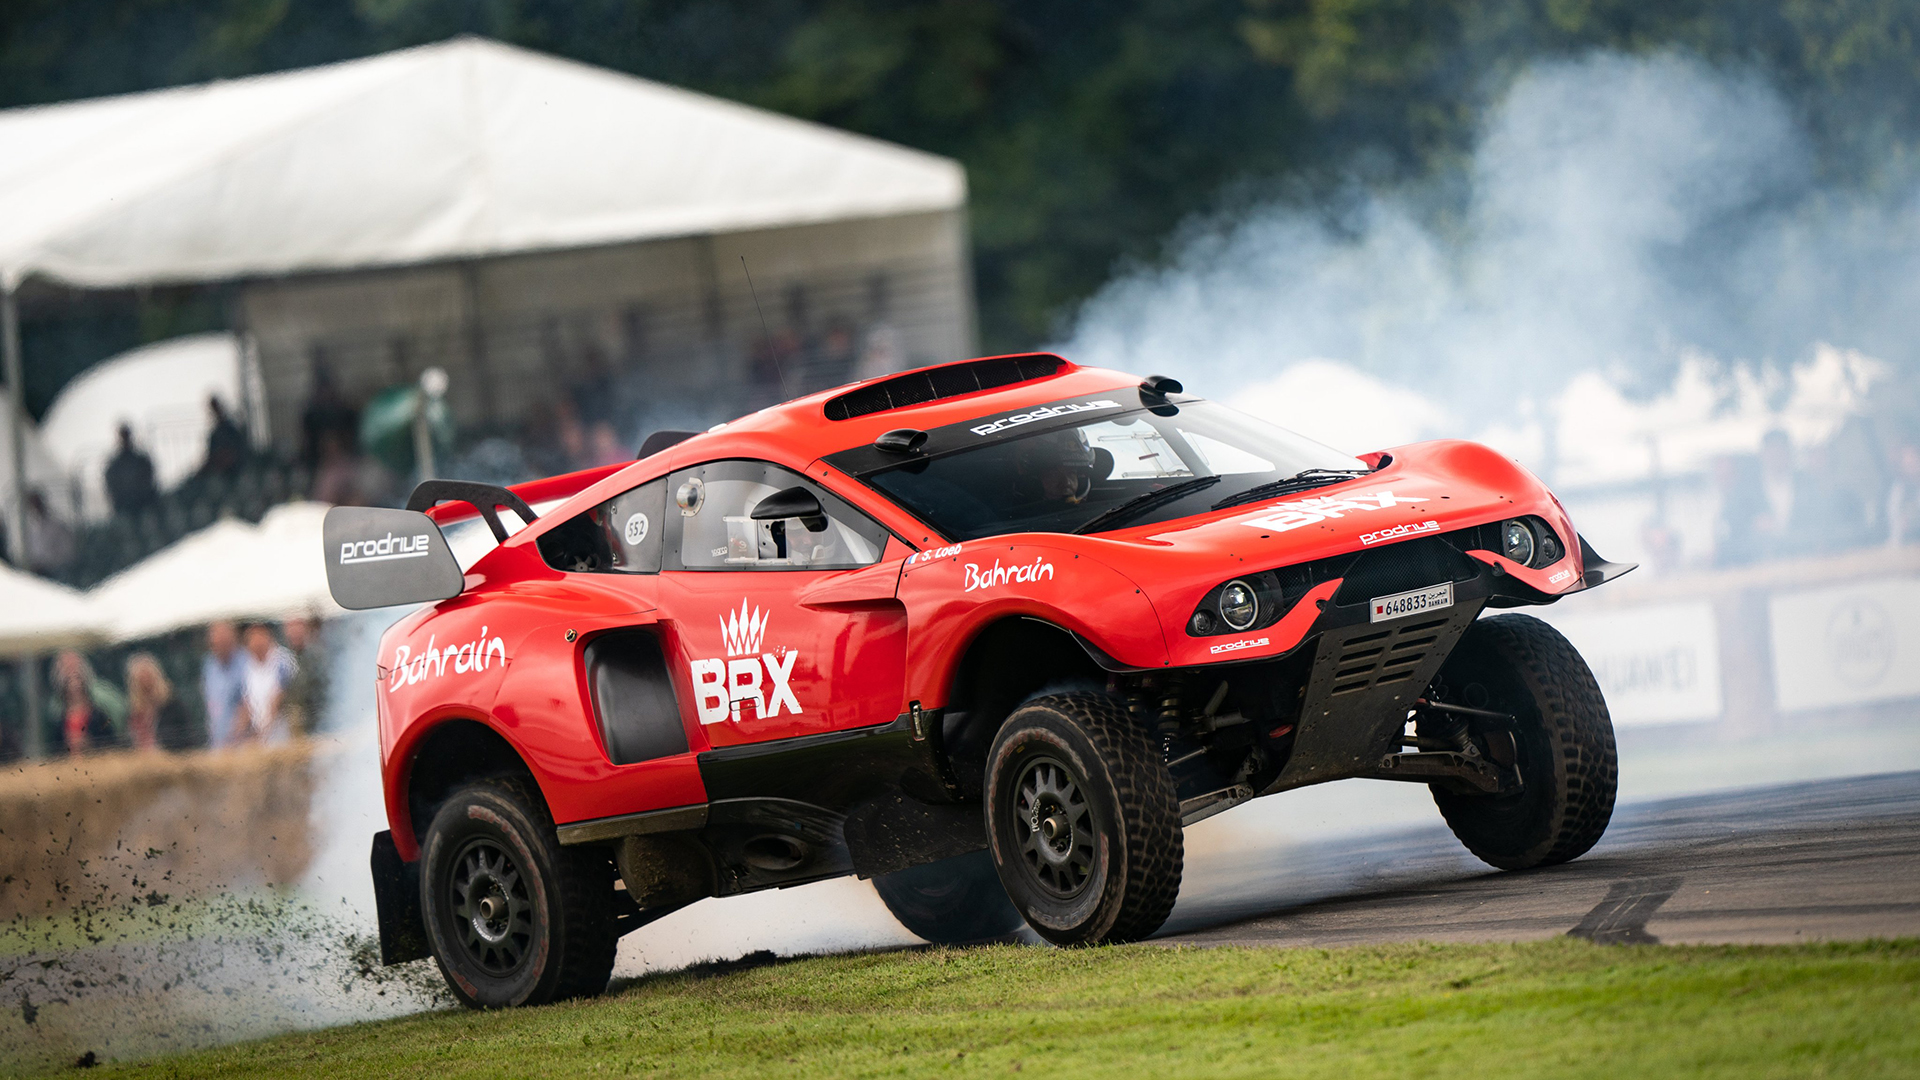 El prototipo del Rally Dakar del Bahréin Raid Xtreme, vehículo similar al que corrió el argentino Orlando Terranova en la última edición (@fosgoodwood)